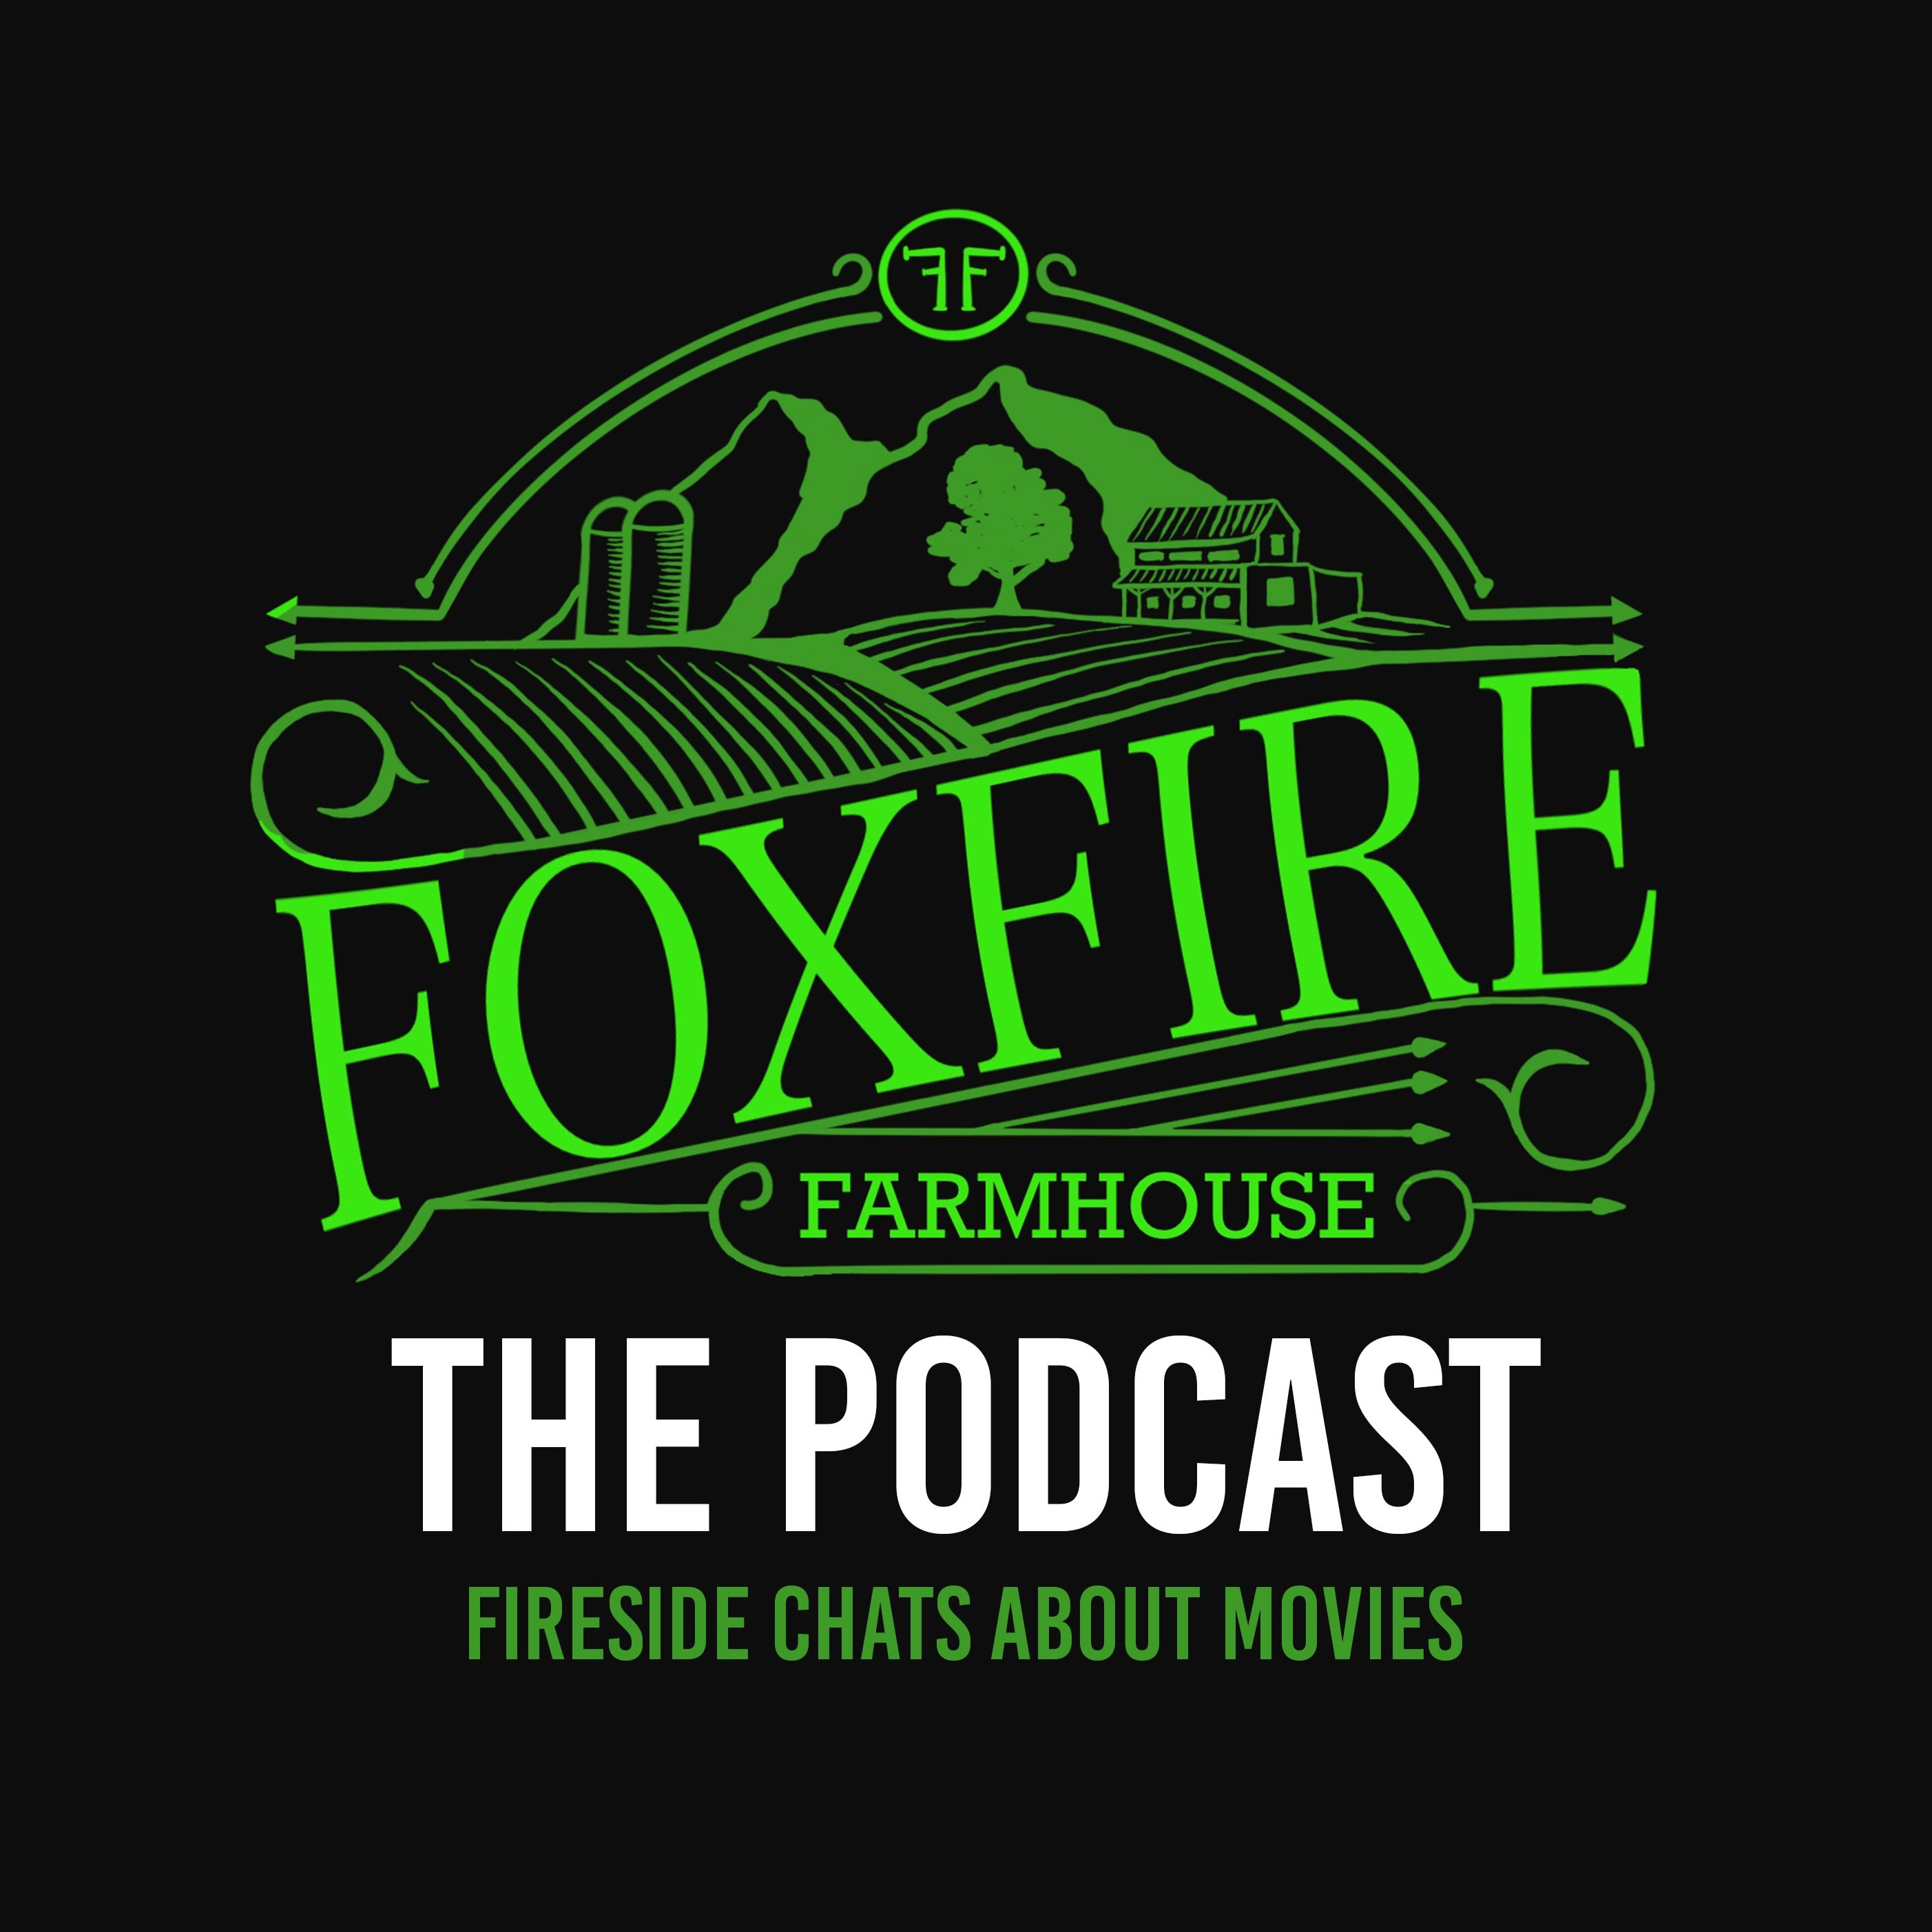 Foxfire Farmhouse: the Podcast